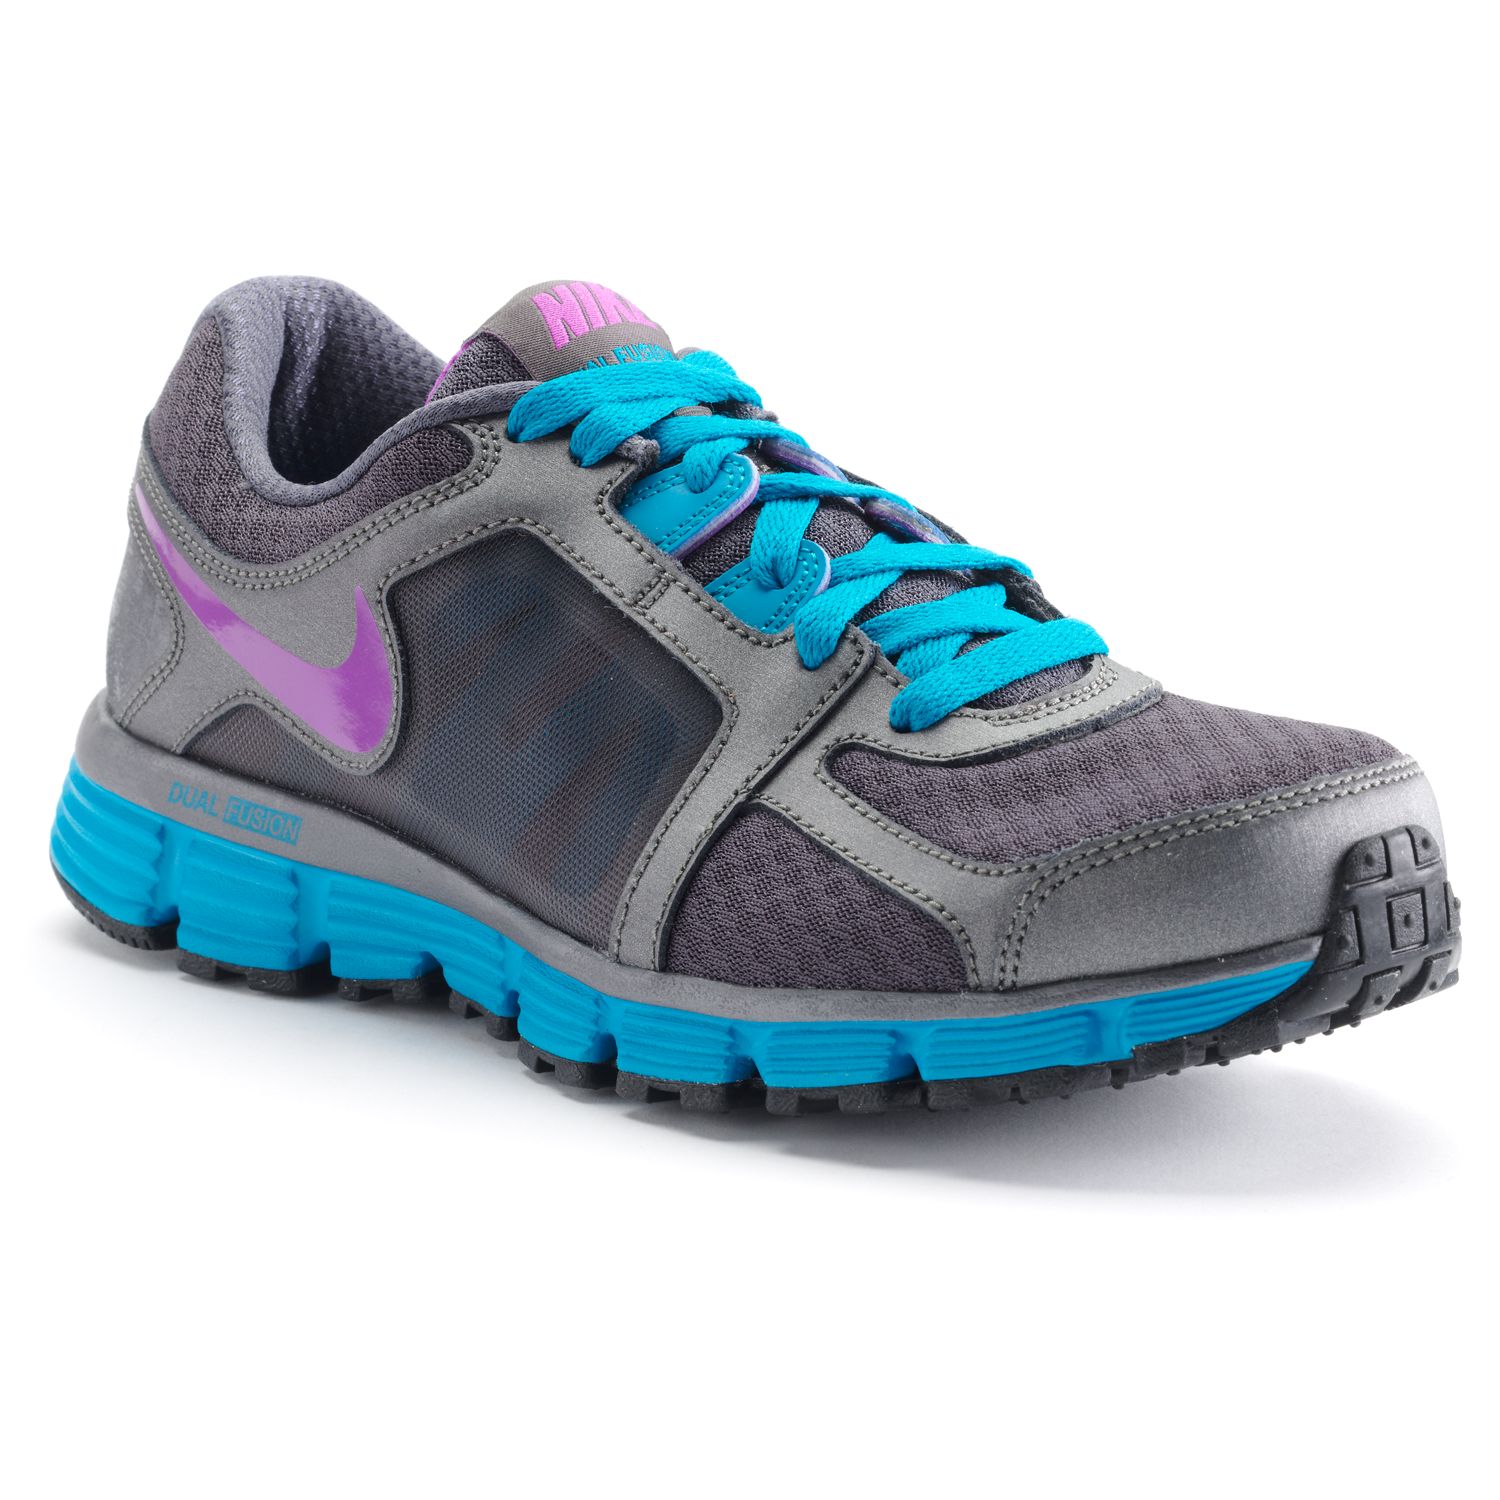 Nike Dual Fusion ST 2 Running Shoes - Women